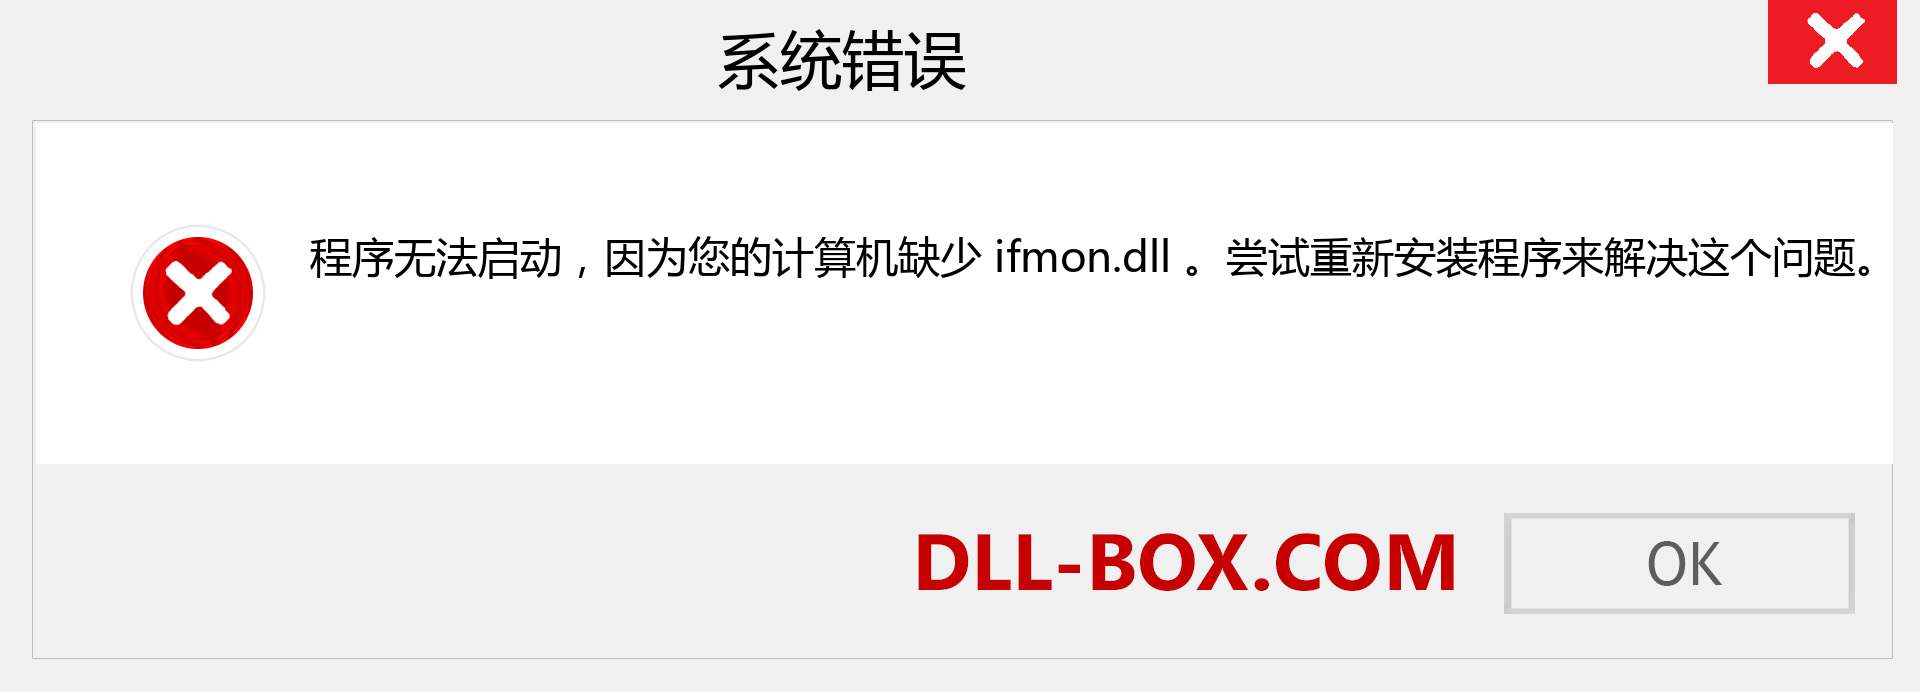 ifmon.dll 文件丢失？。 适用于 Windows 7、8、10 的下载 - 修复 Windows、照片、图像上的 ifmon dll 丢失错误